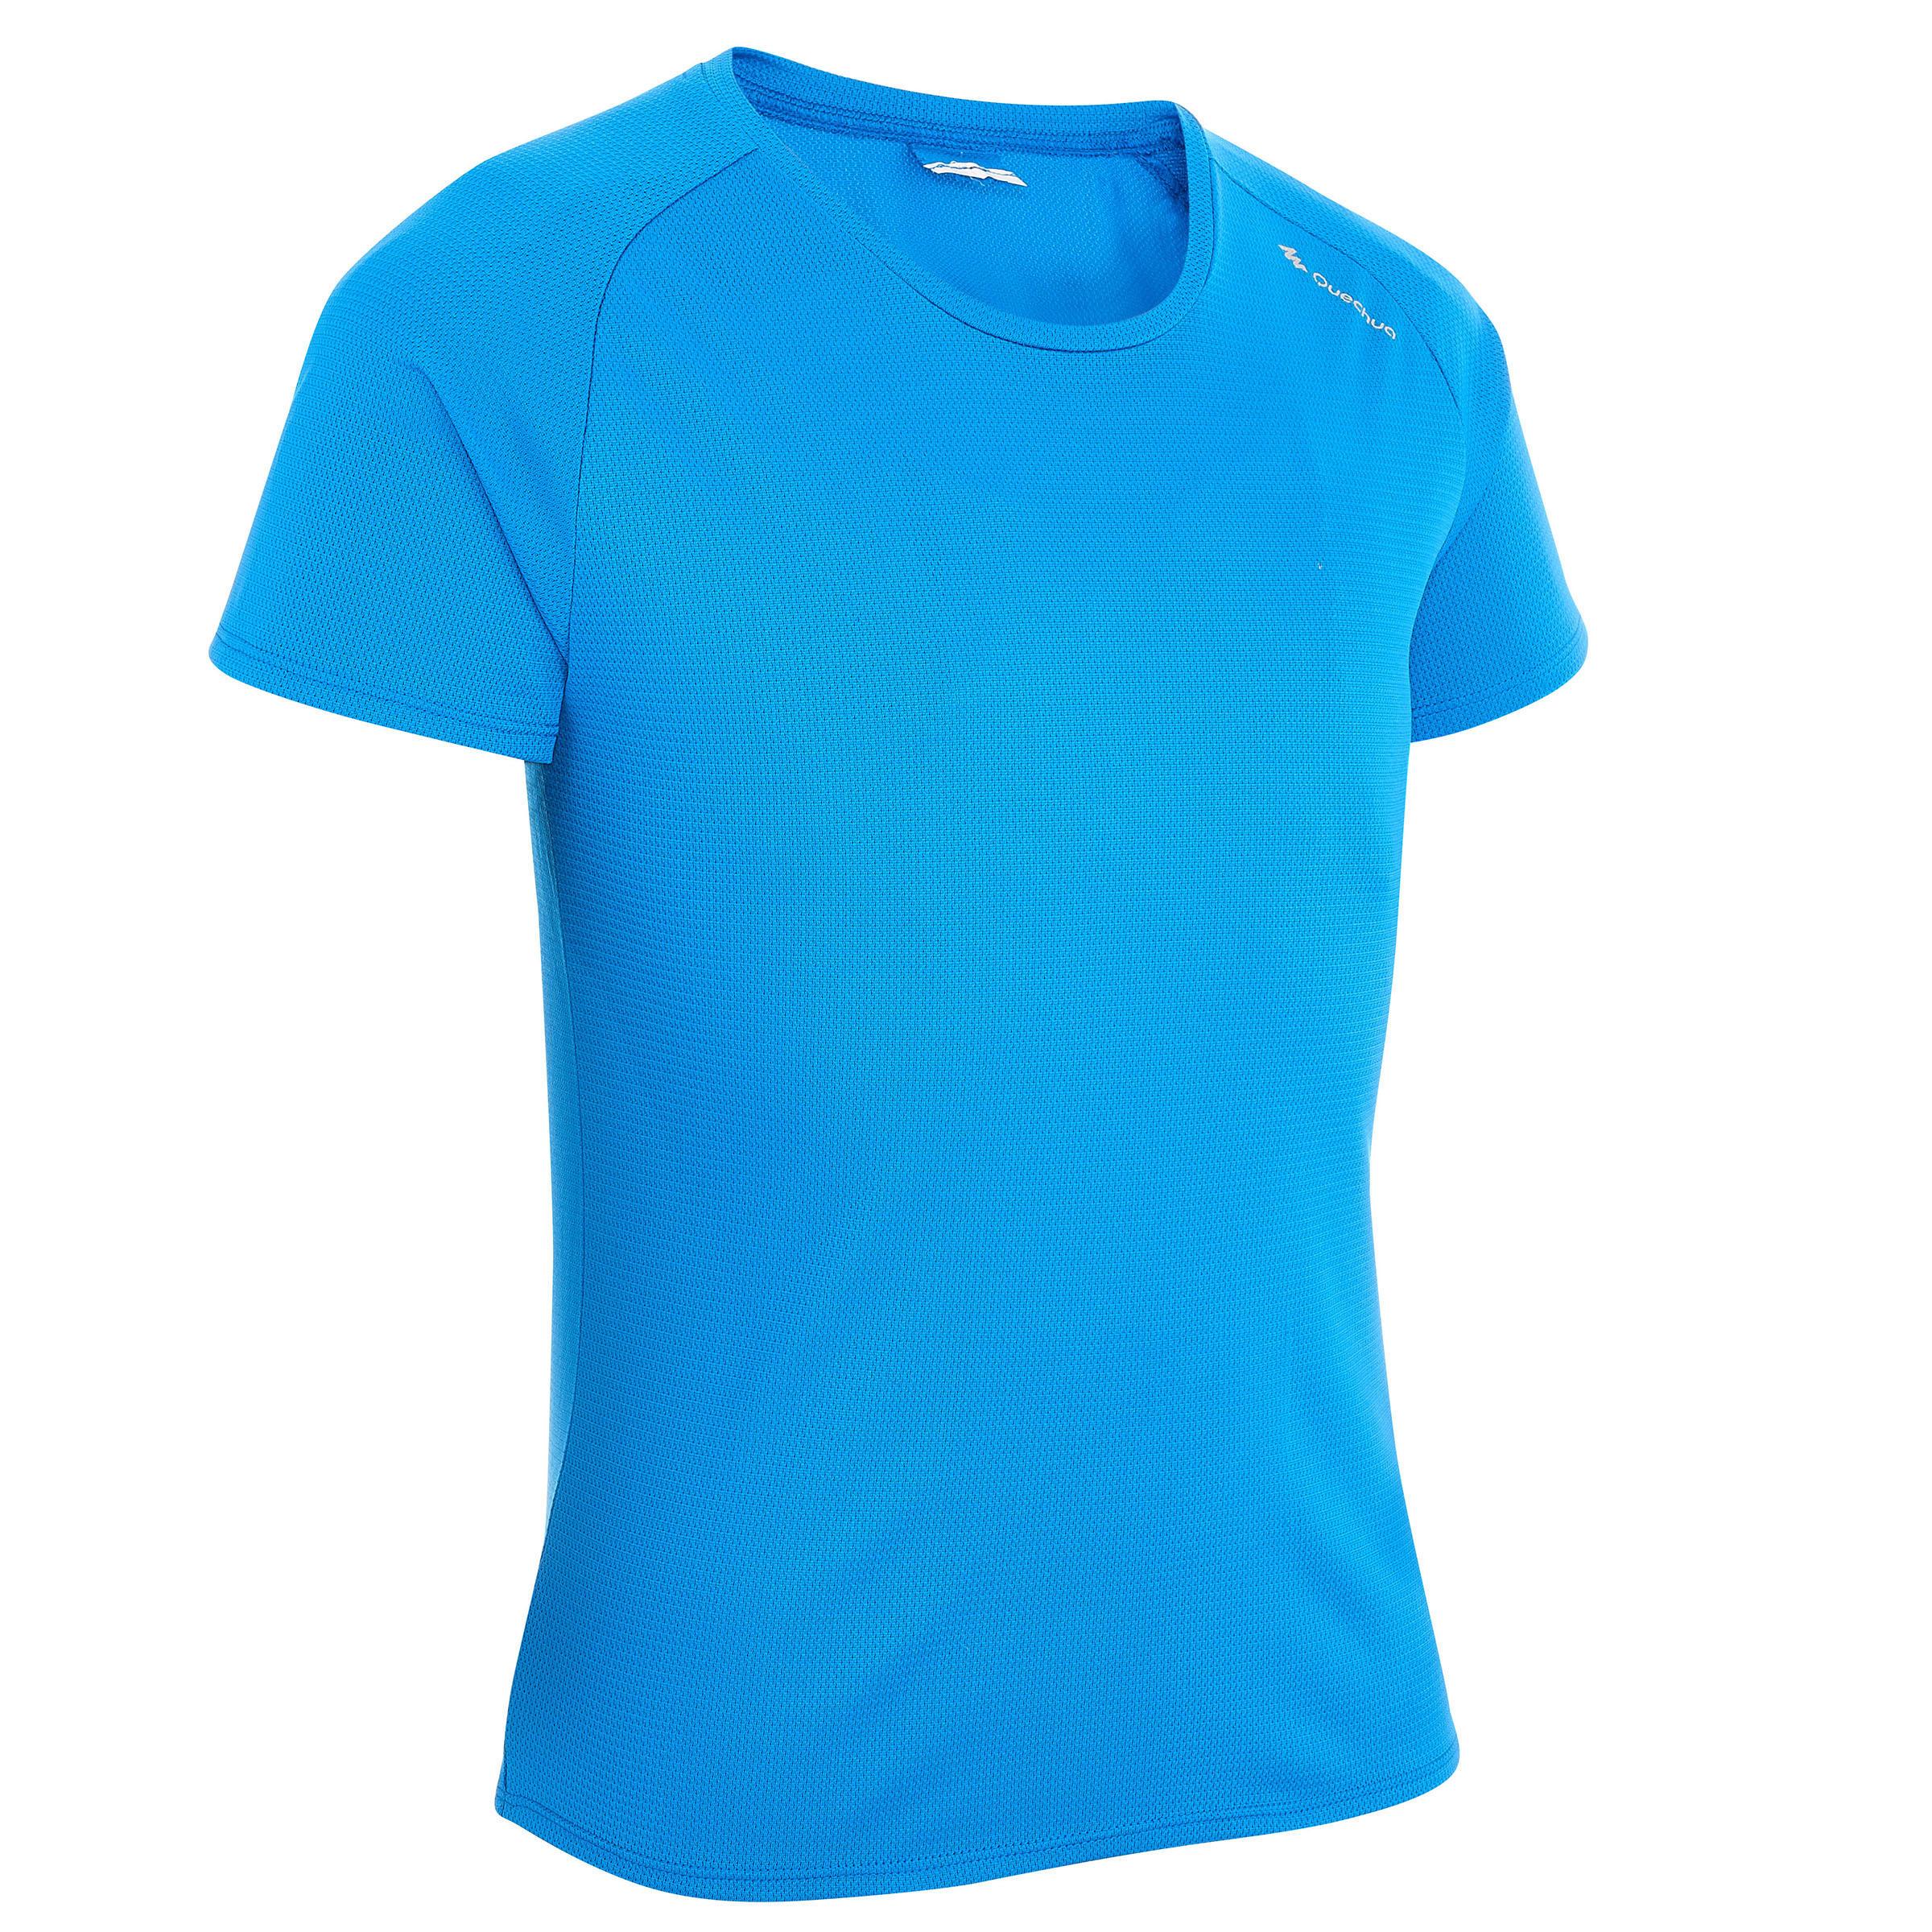 [ด่วน!! โปรโมชั่นมีจำนวนจำกัด] เสื้อยืดเด็กผู้ชายสำหรับใส่รุ่น MH550 (สีฟ้า) สำหรับ เดินป่า